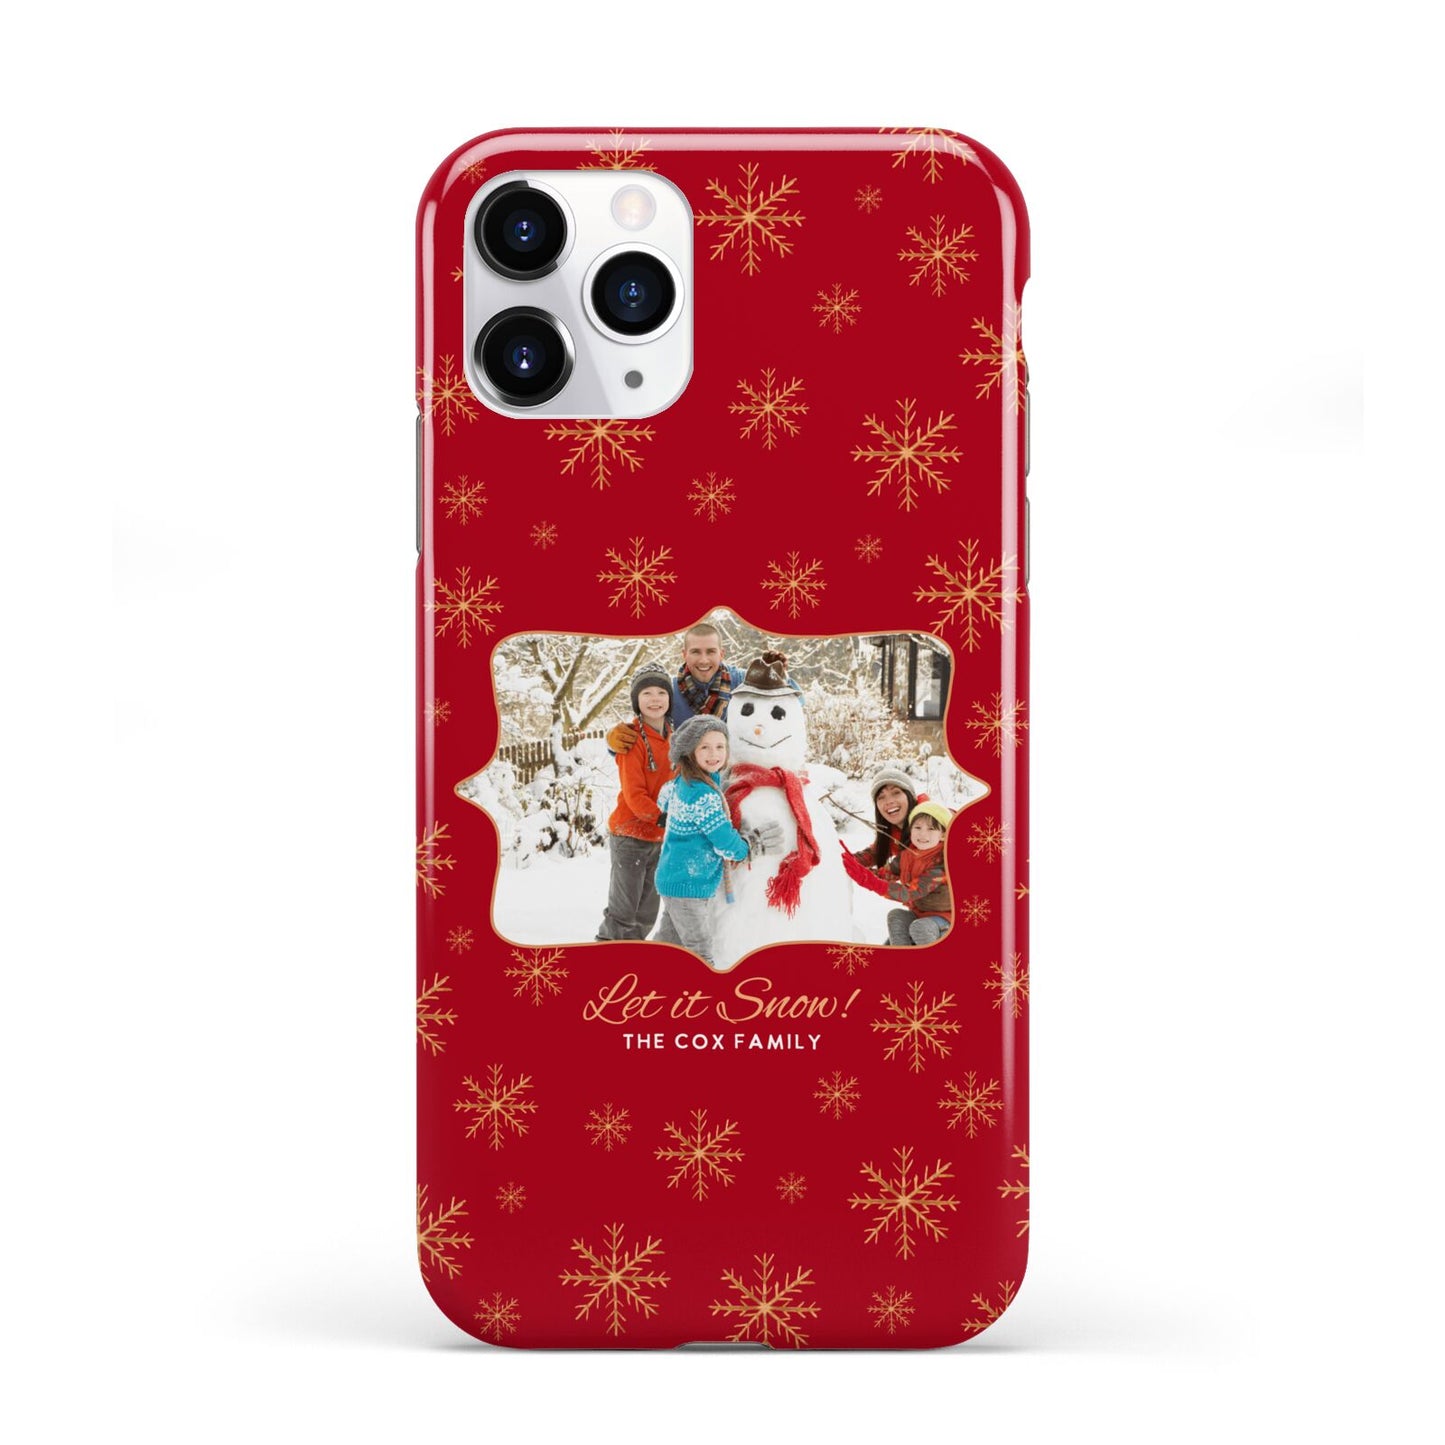 Let it Snow Christmas Photo Upload iPhone 11 Pro 3D Tough Case